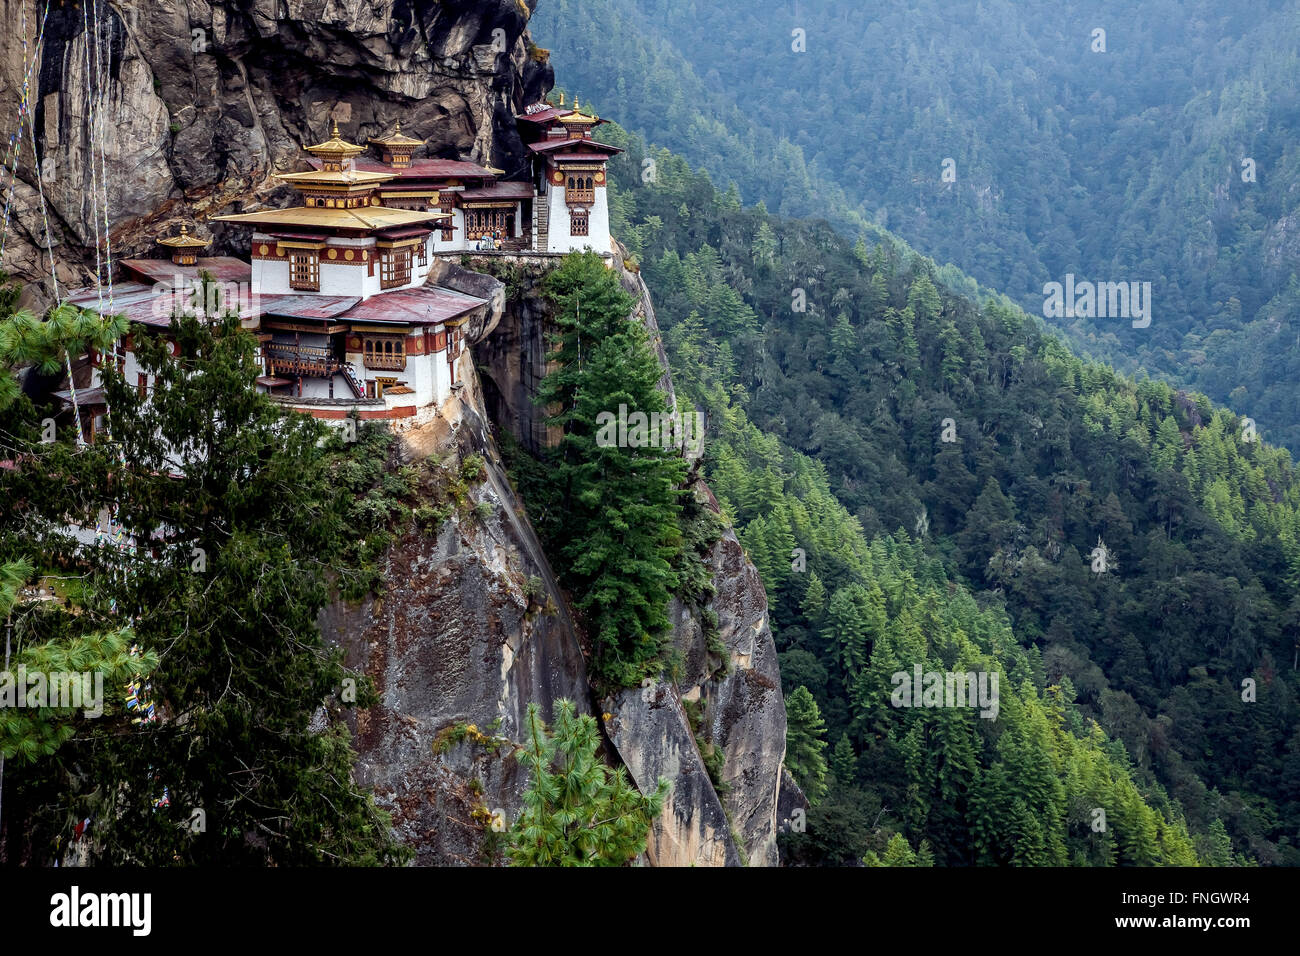 Paro Taktsang, también conocido como el Nido del Tigre es un sitio sagrado budista Vajrayana Himalaya situado en el acantilado del valle de Paro en Bután. Foto de stock